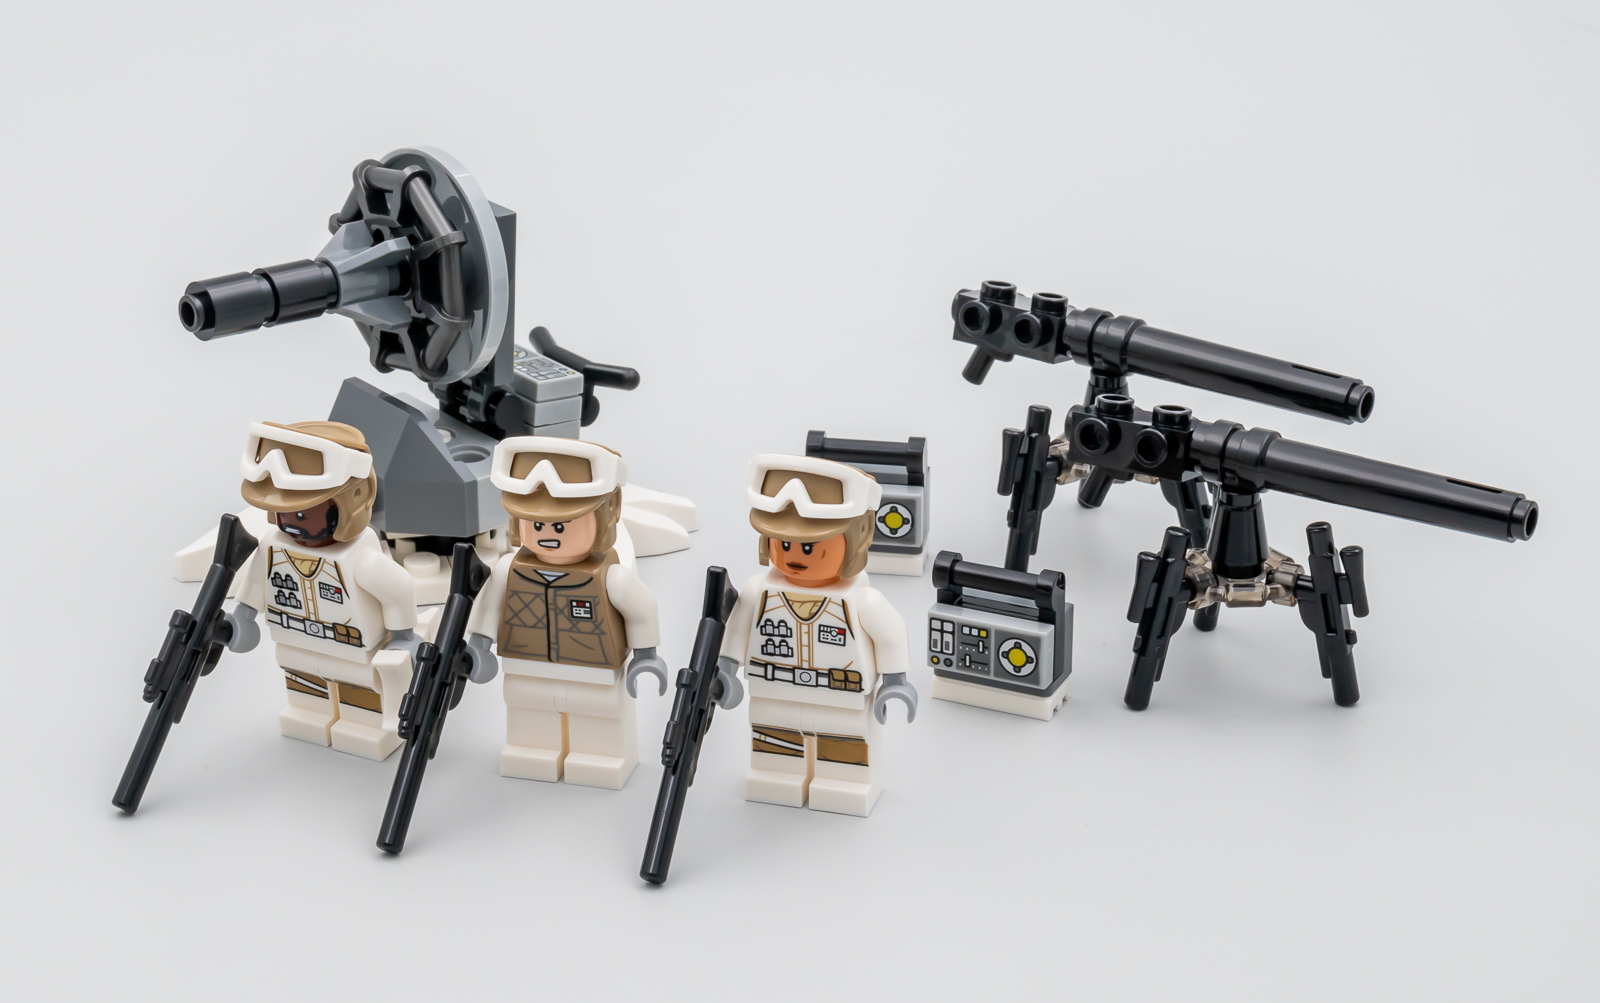 LEGO Star Wars Diorama deals start from $64